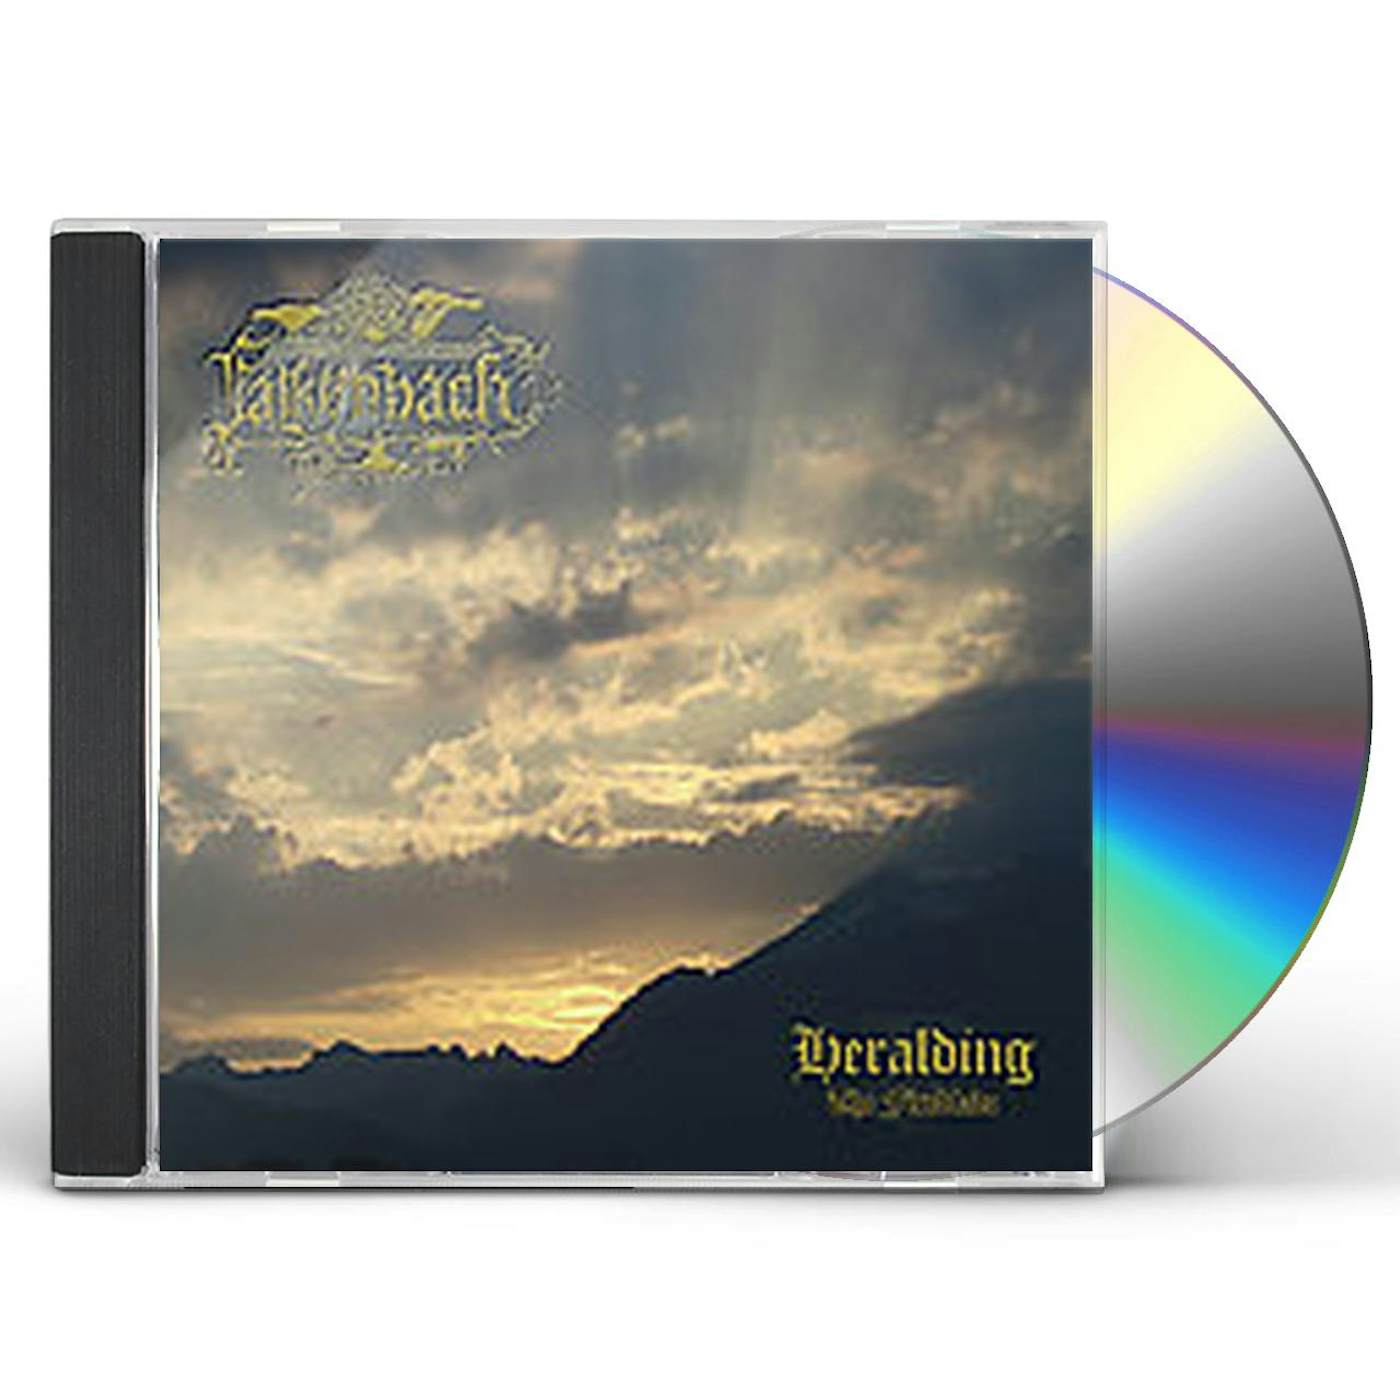 Falkenbach HERALDING: FIREBLADE CD